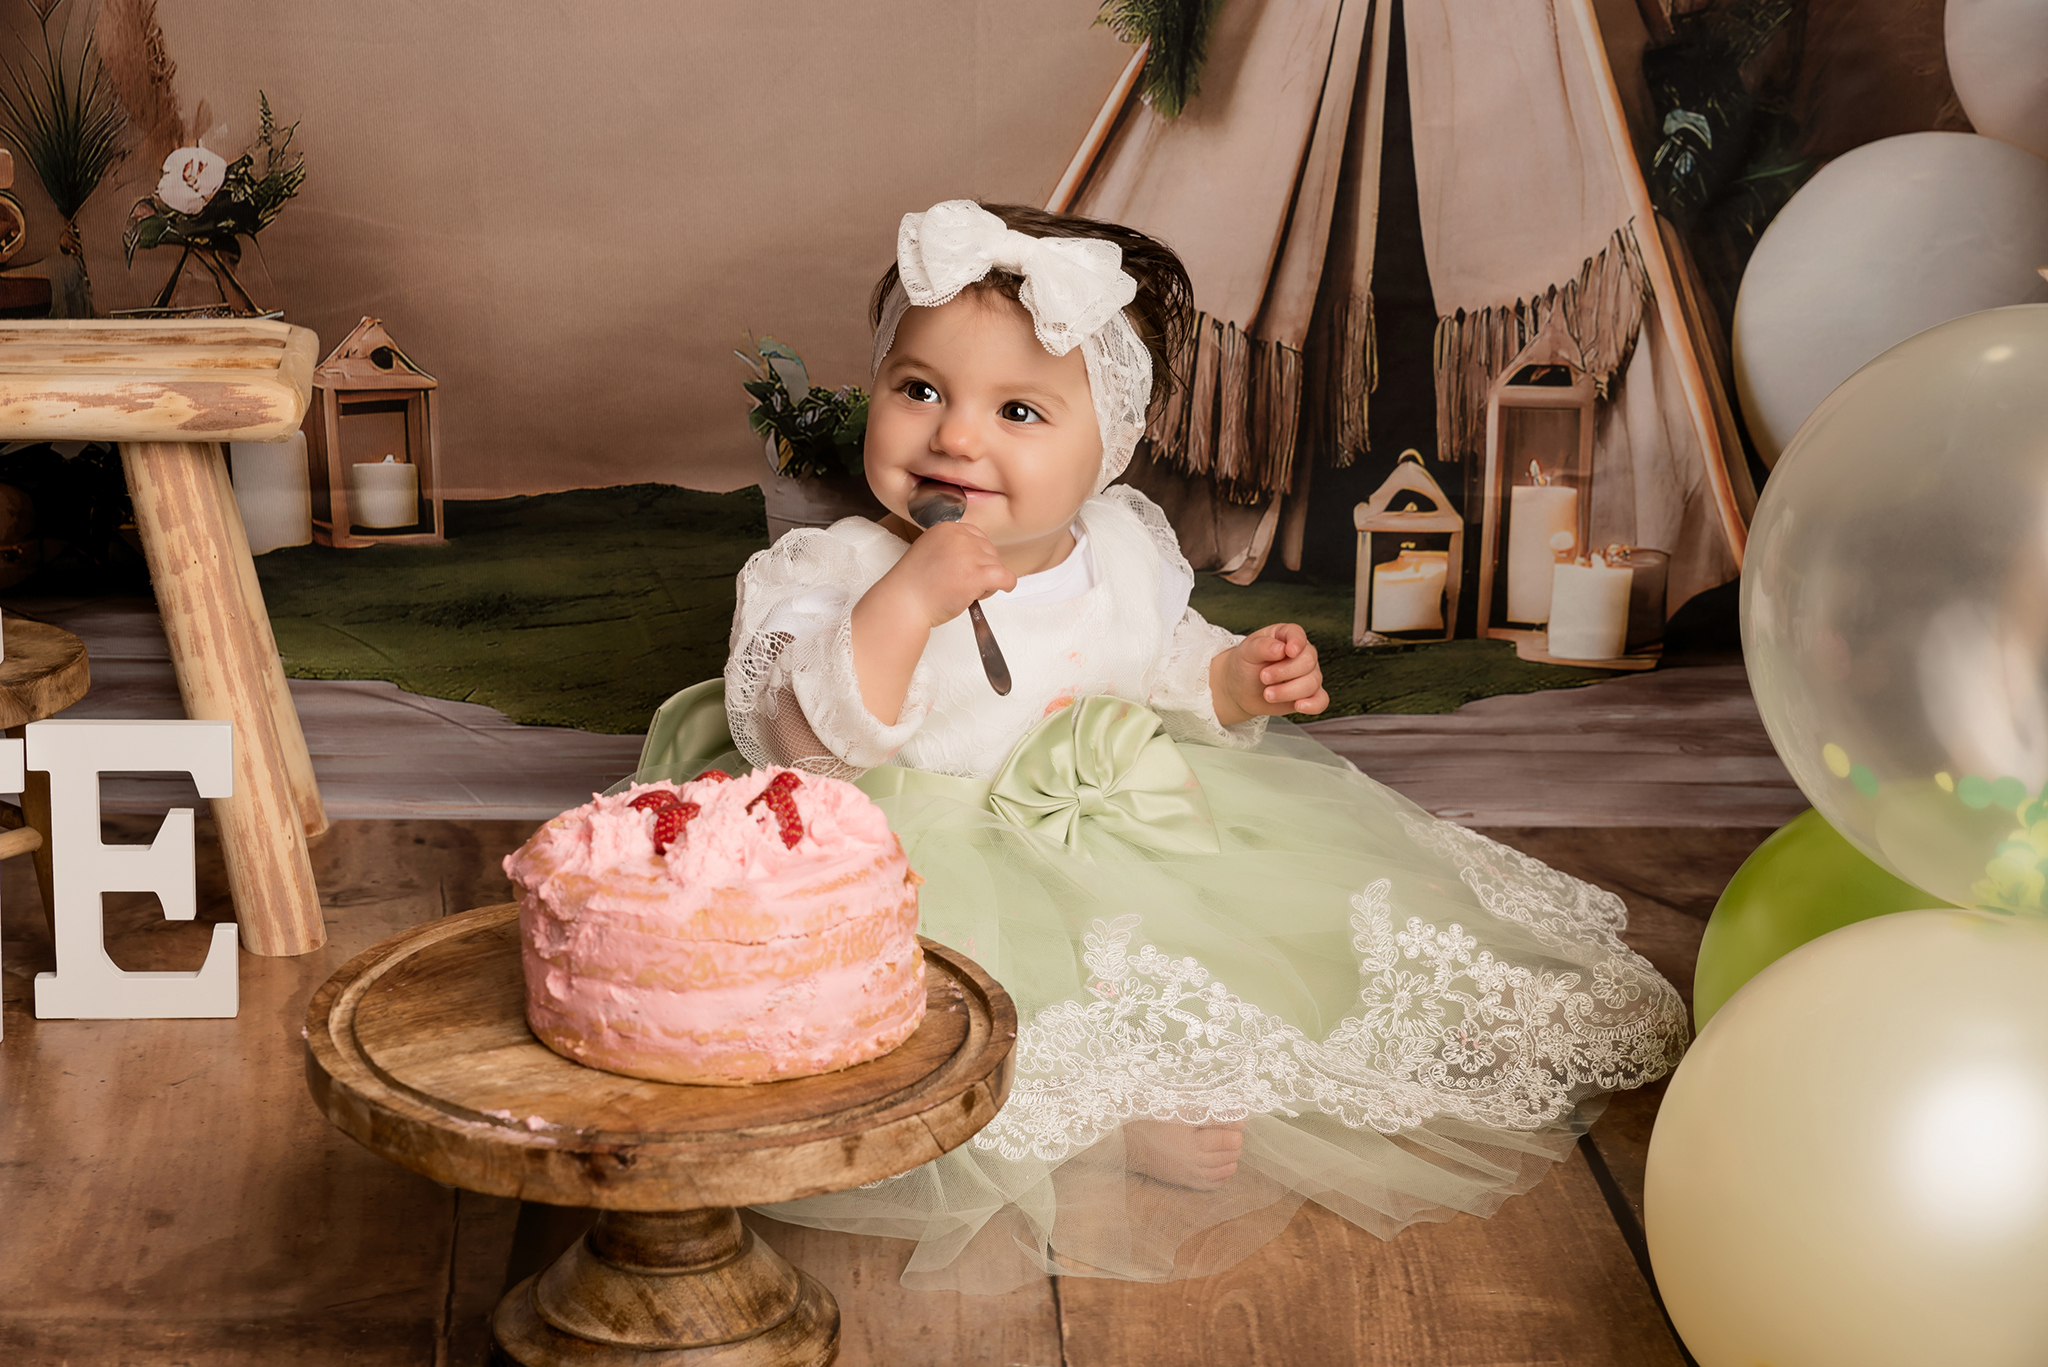 séance photo bébé smash the cake bain de lait enfant